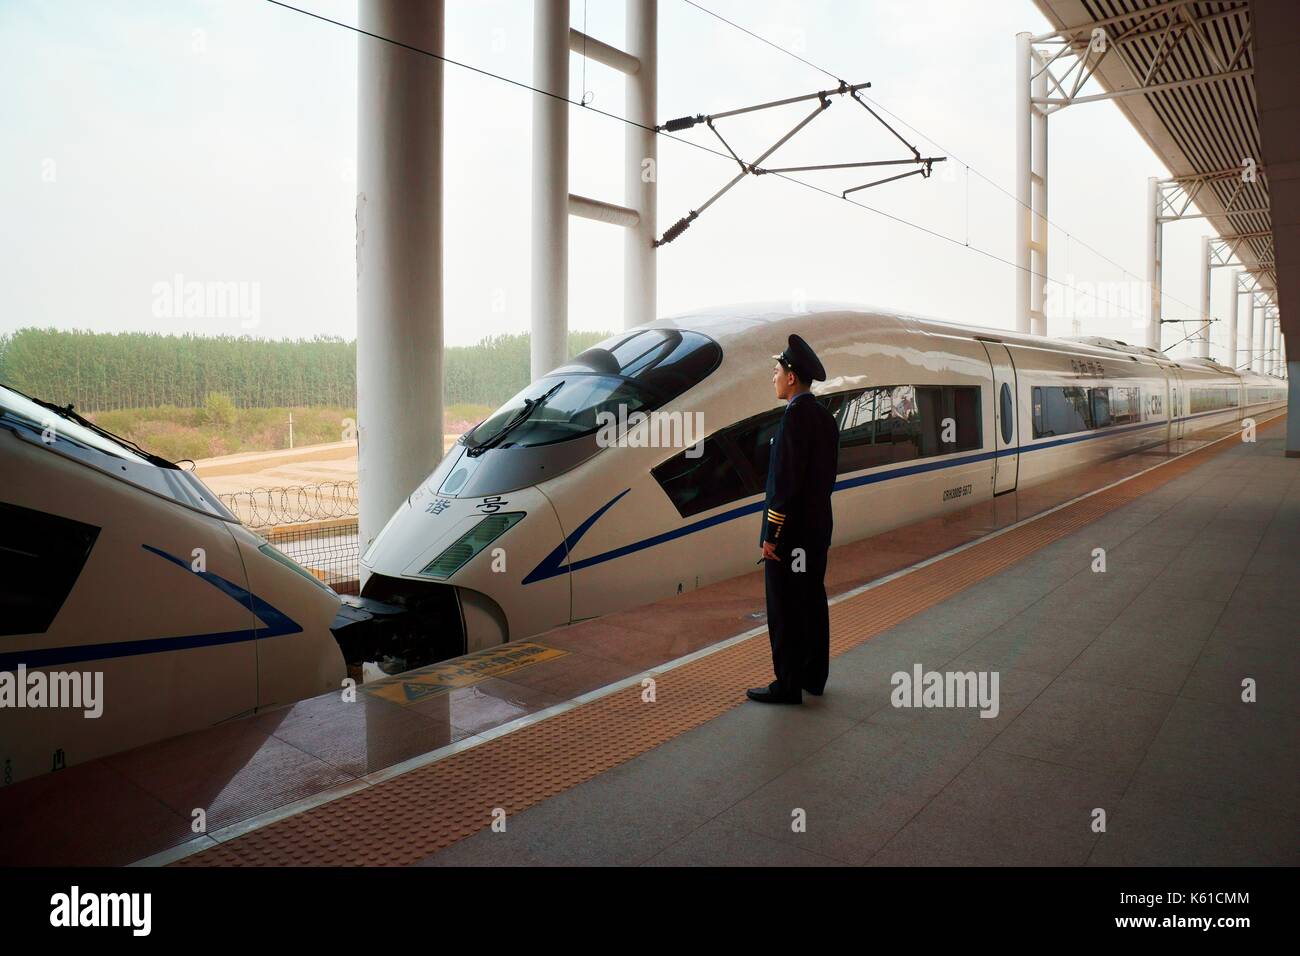 Bullet train électrique de la Beijing pour Shanghai réseau ferroviaire à grande vitesse à la gare de l'Est de Qingdao, province de Shandong, Chine Banque D'Images